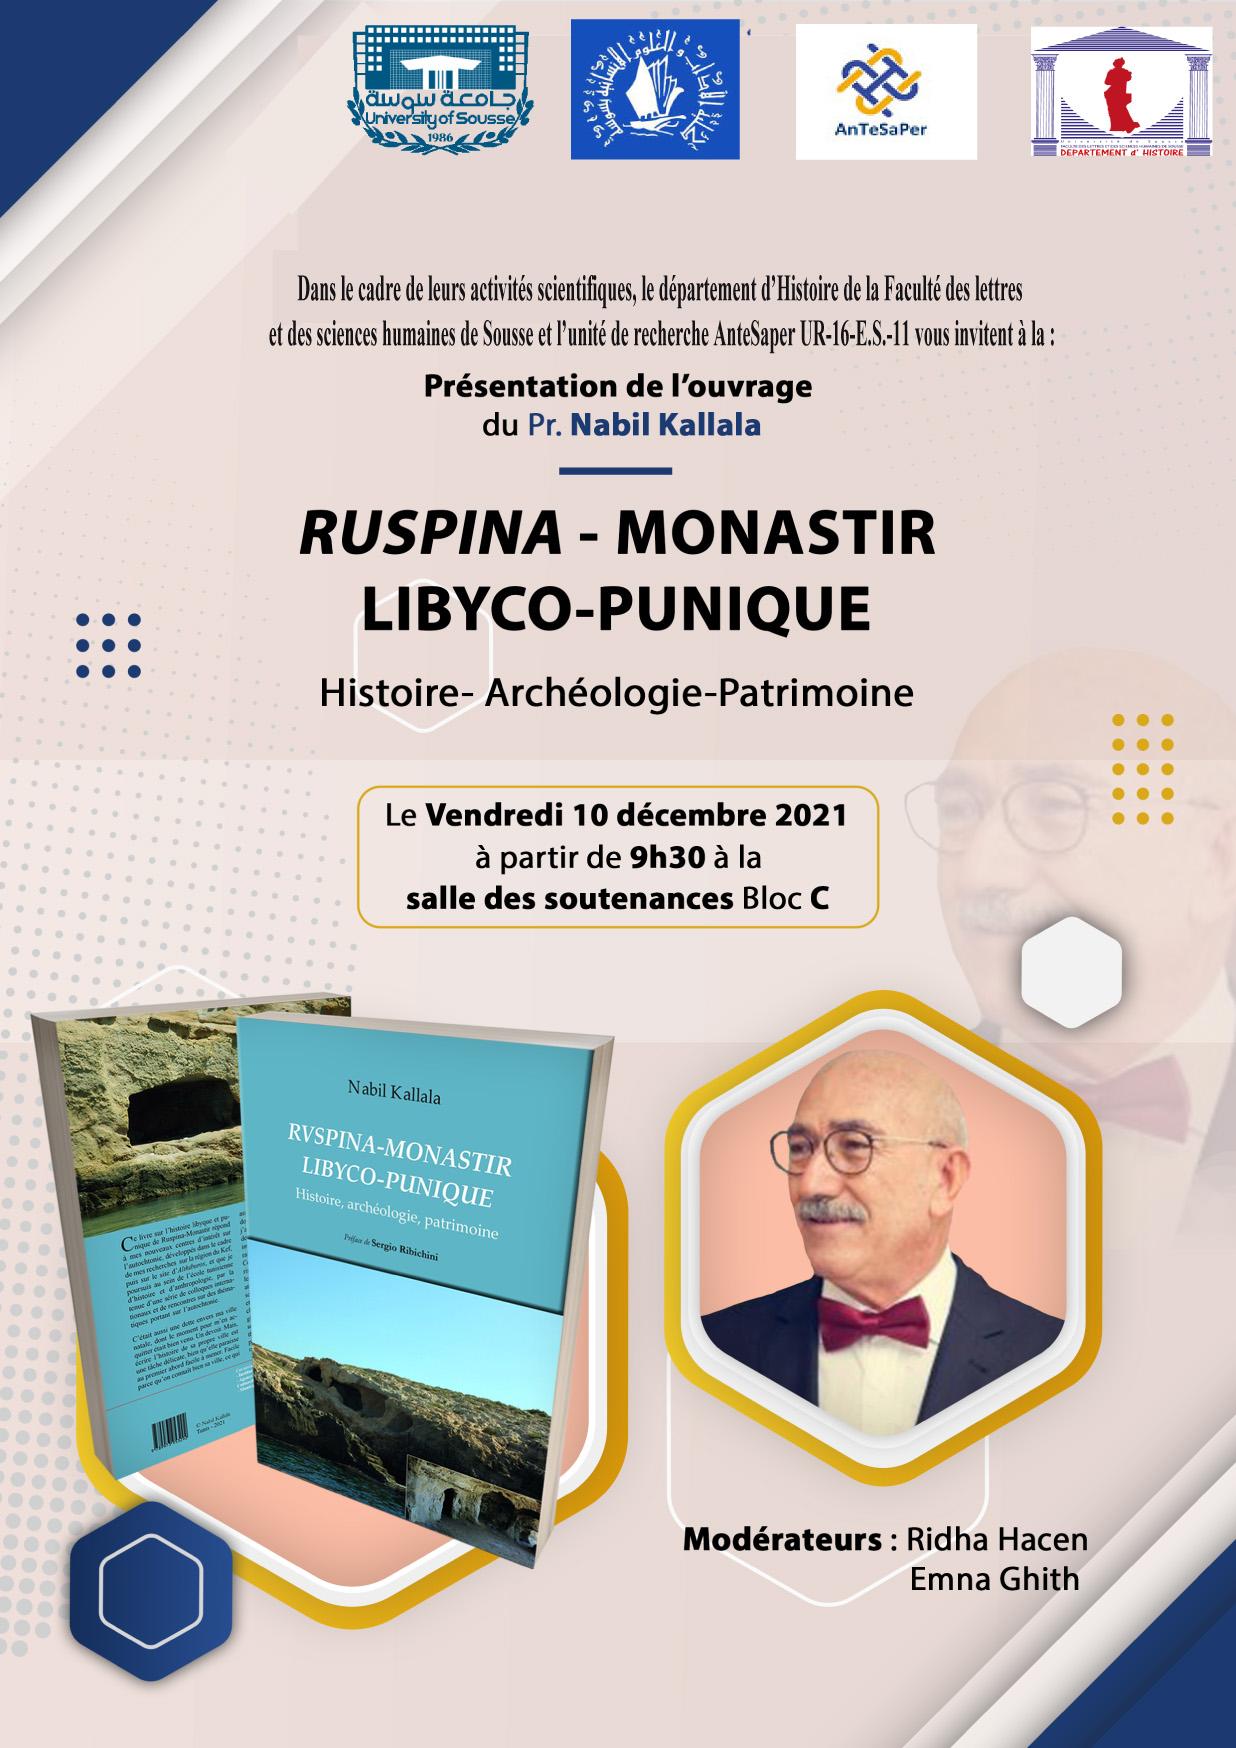 Présentation de l'ouvrage du Pr. Nabil KALLALA "RUSPINA-MONASTIR LIBYCO-PUNIQUE"